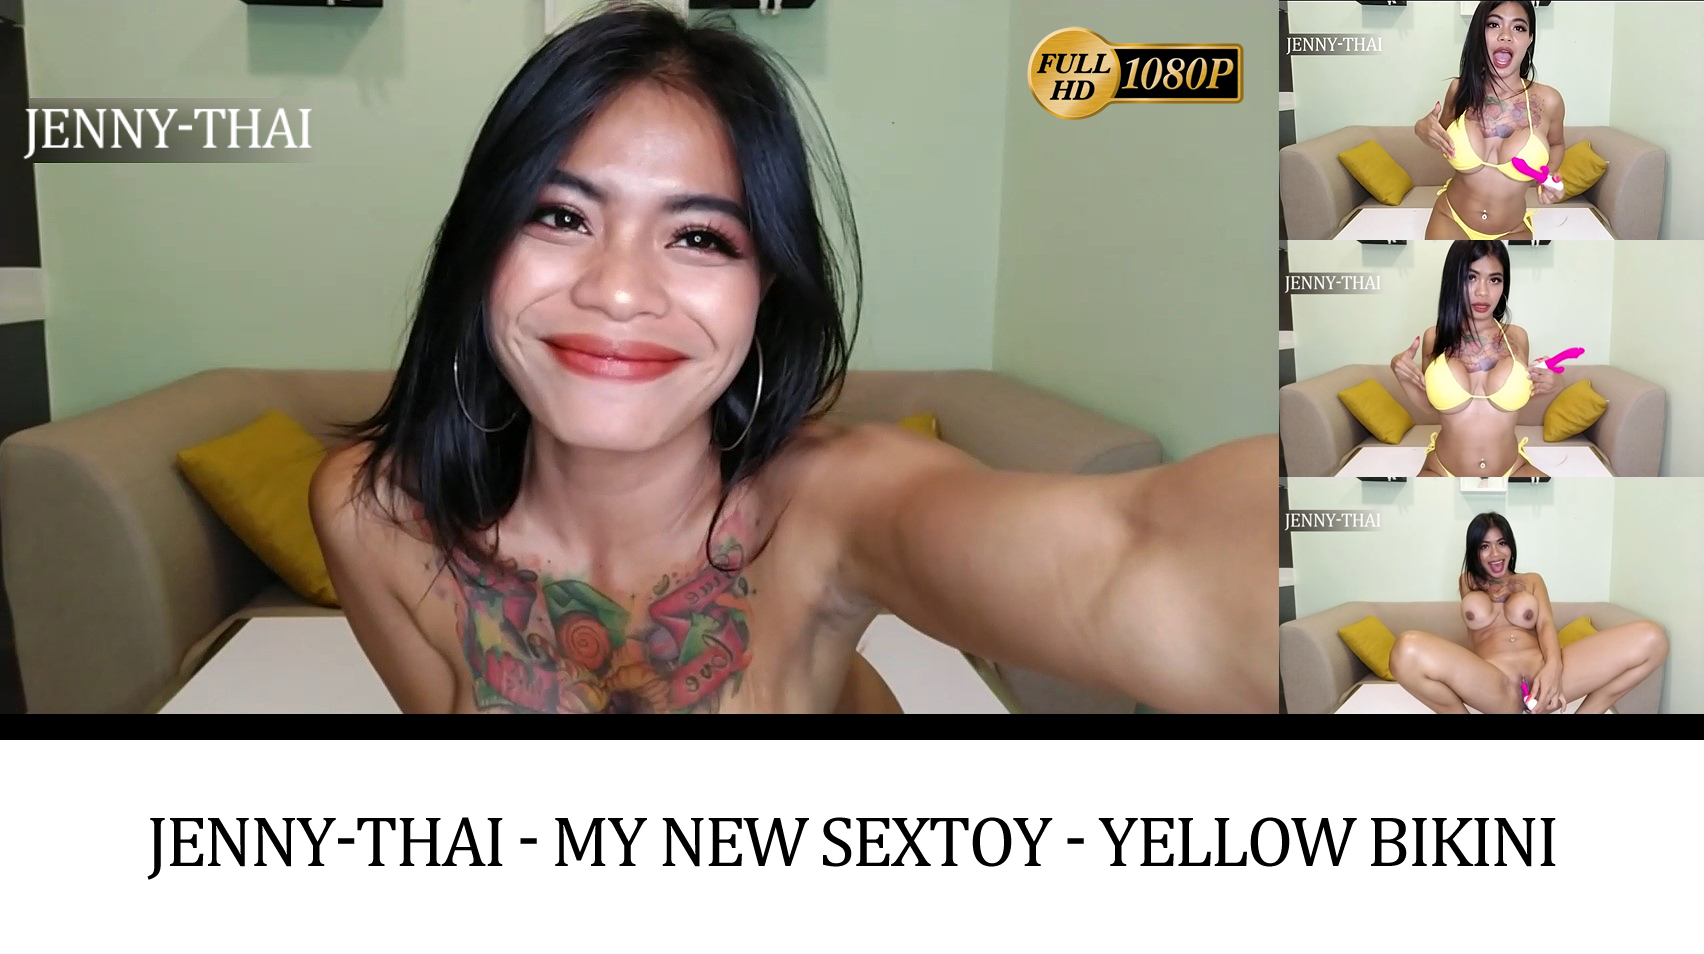 Jenny-Thai - My new Sextoy - Yellow Bikini - www.Big7.com